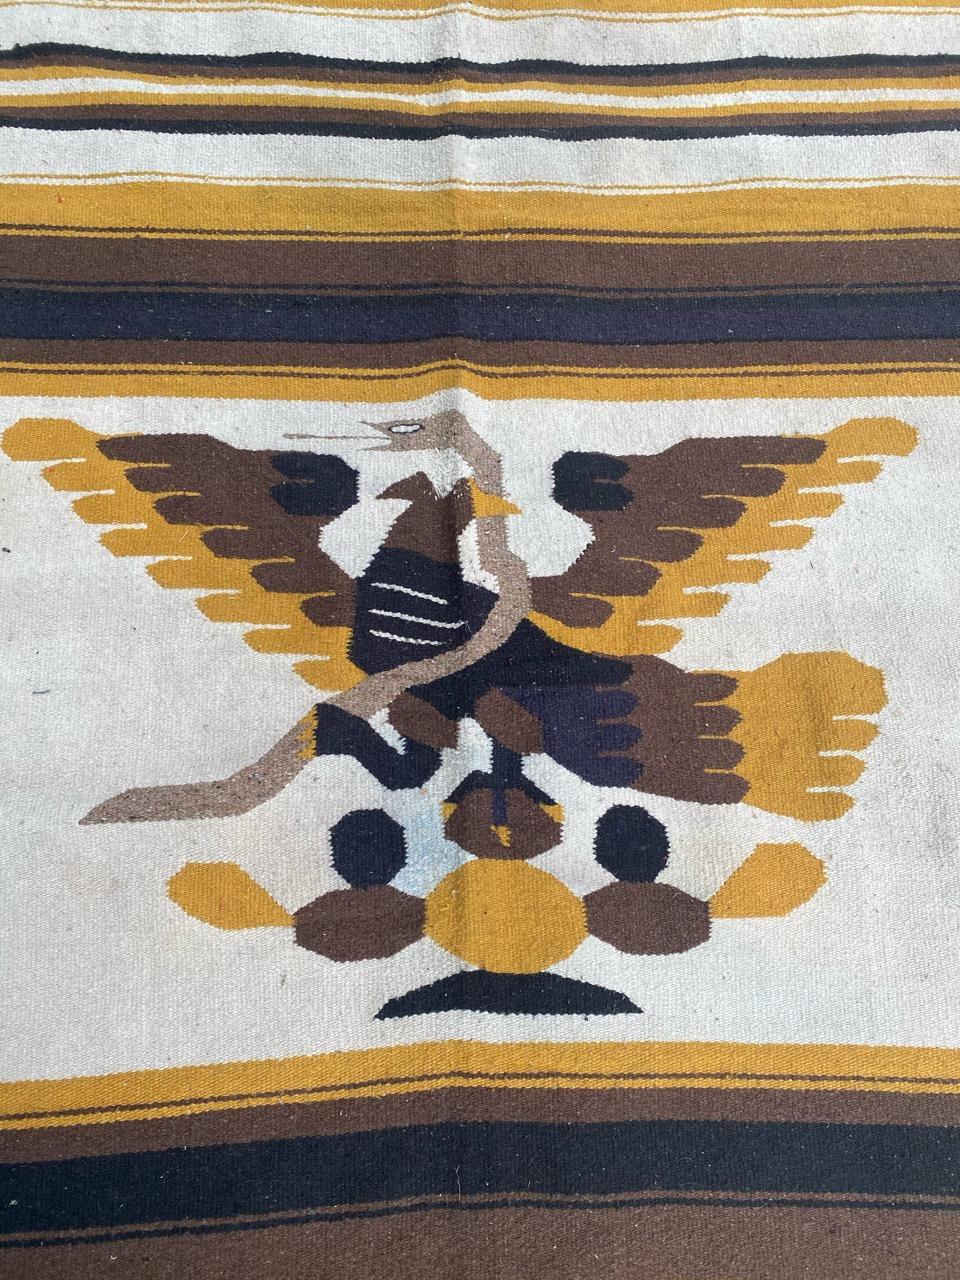 Belle tapisserie sud-américaine du milieu du siècle dernier avec un magnifique motif d'aigle et des couleurs brunes et jaunes, entièrement tissée à la main avec de la laine sur une base de coton.

✨✨✨
